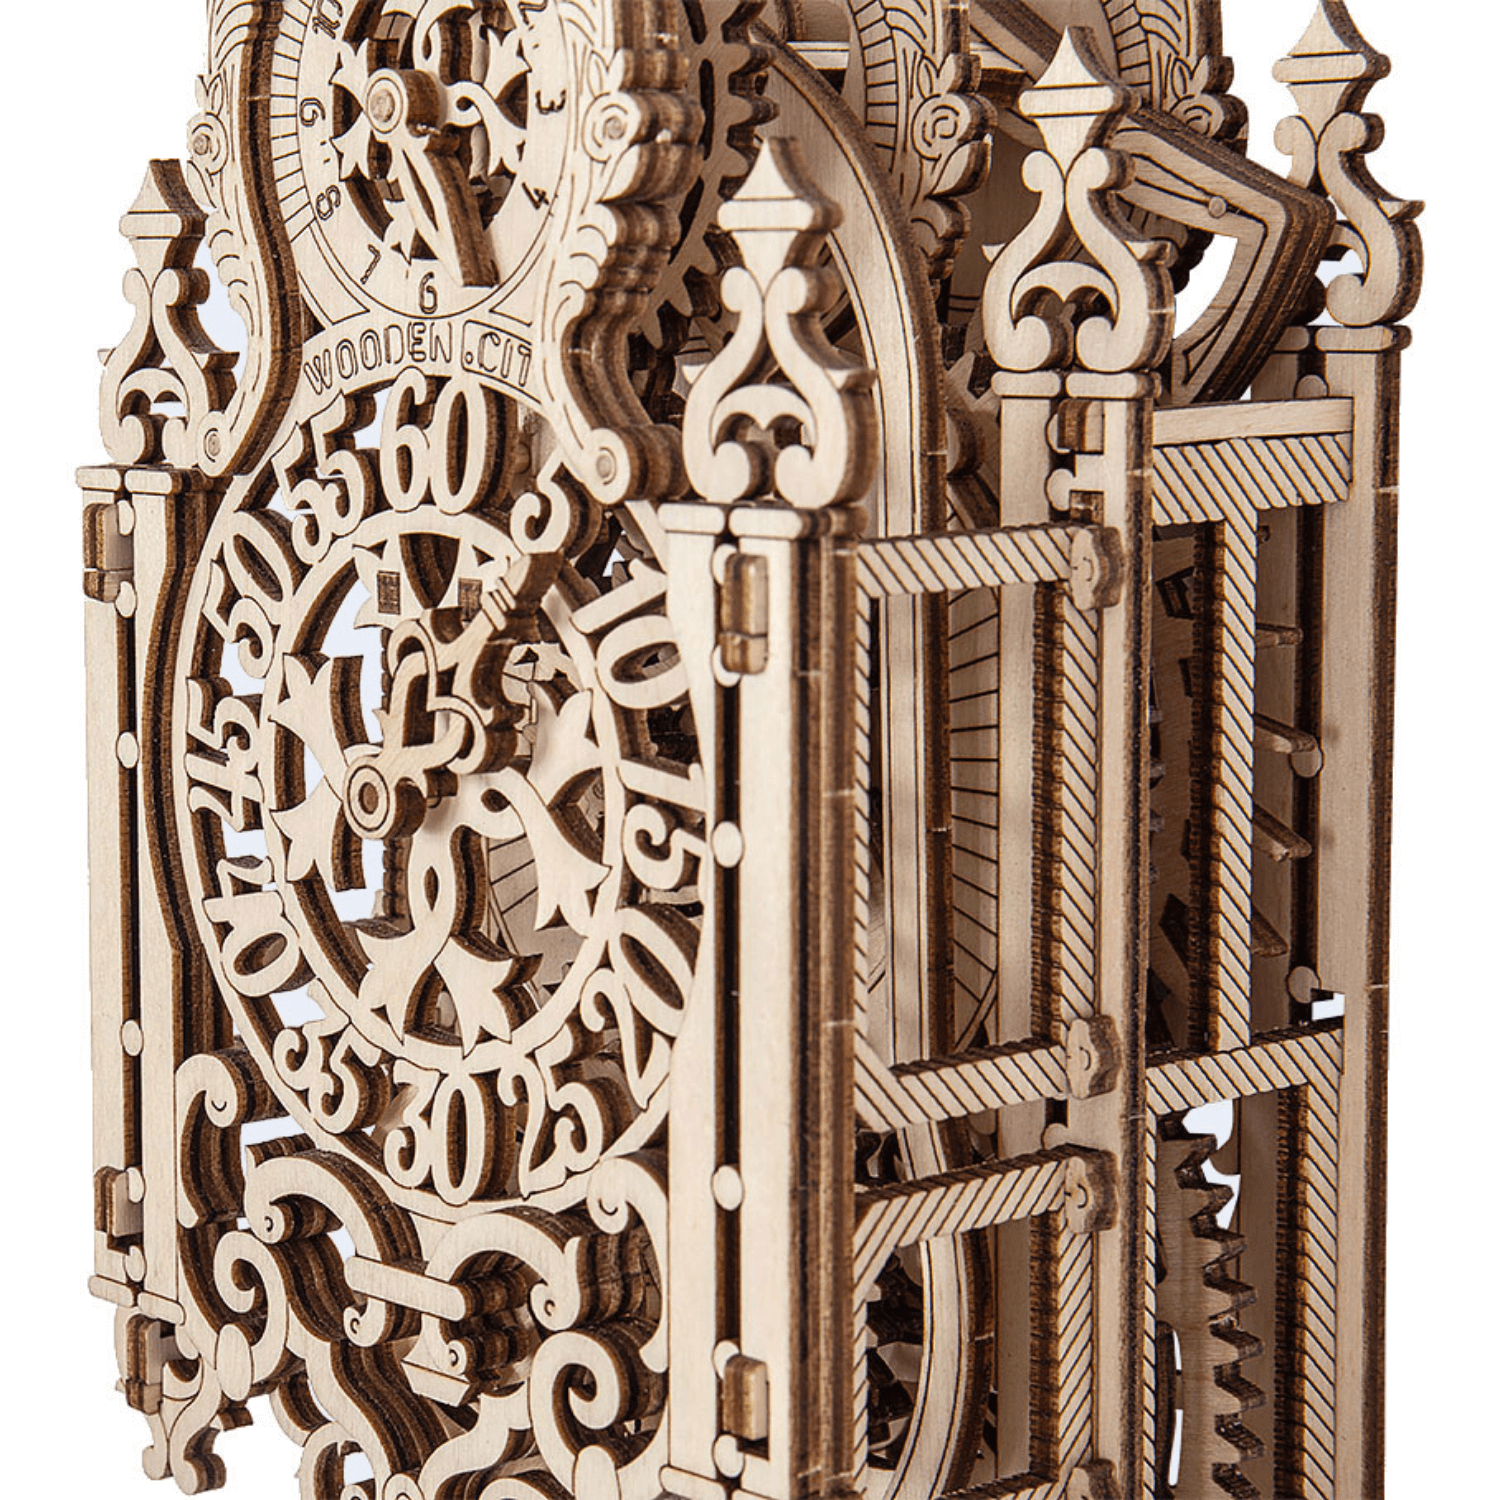 Royal Clock-Puzzle mécanique en bois-WoodenCity--